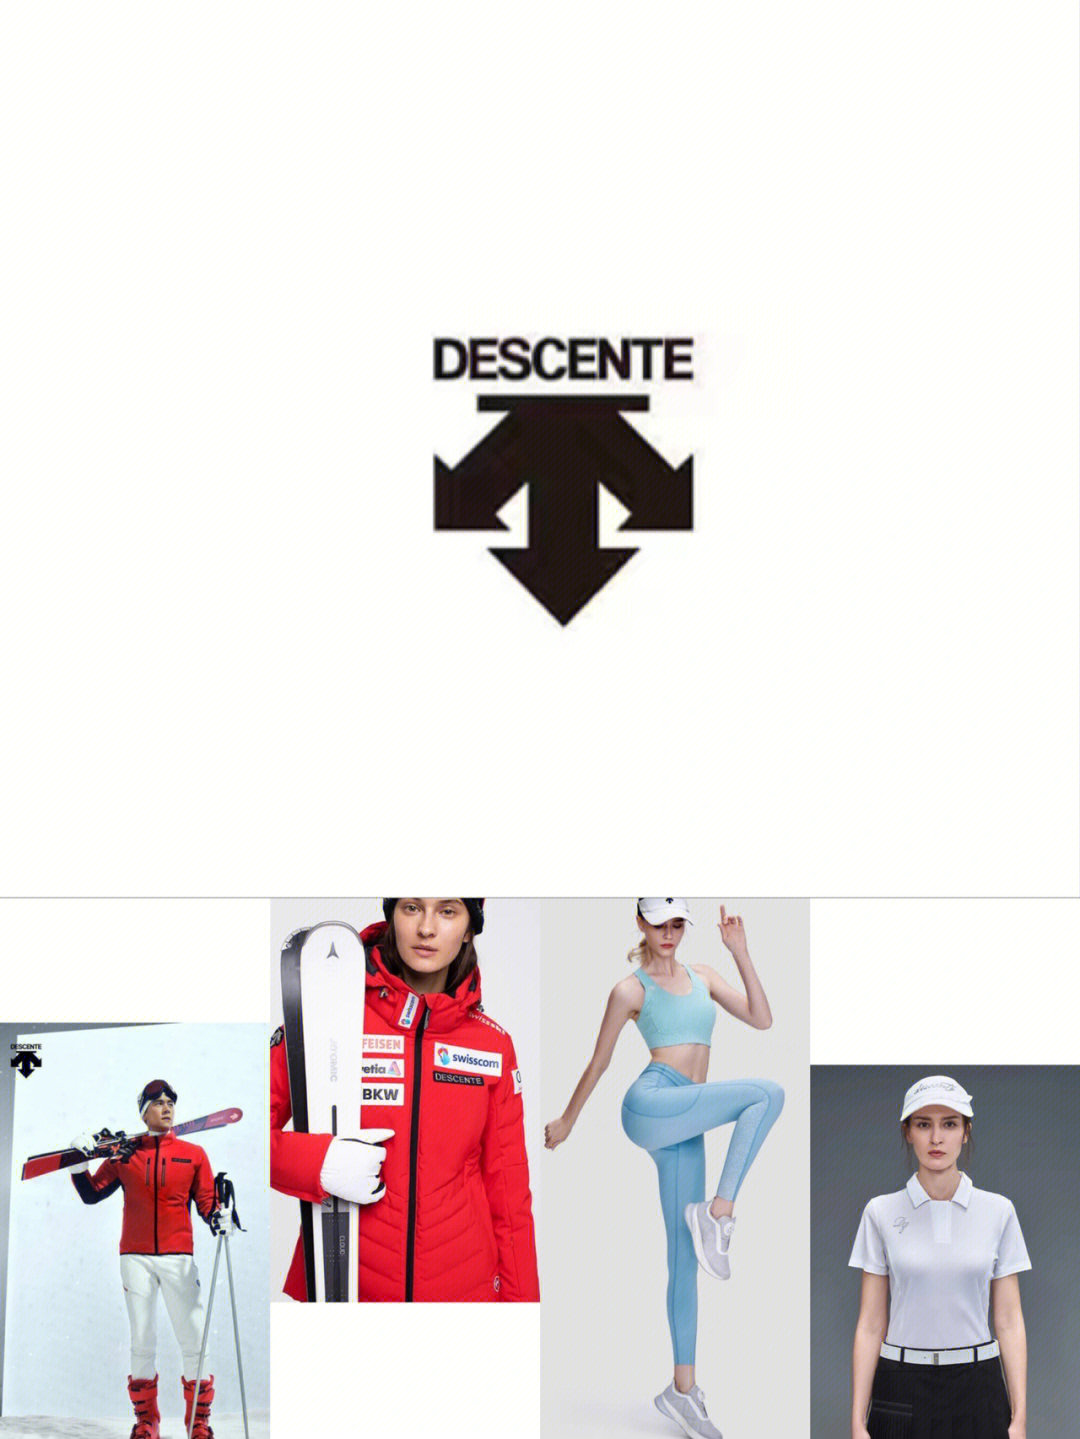 迪桑特成立于1935年,是知名的日本运动品牌,其logo的三箭头形式则分别